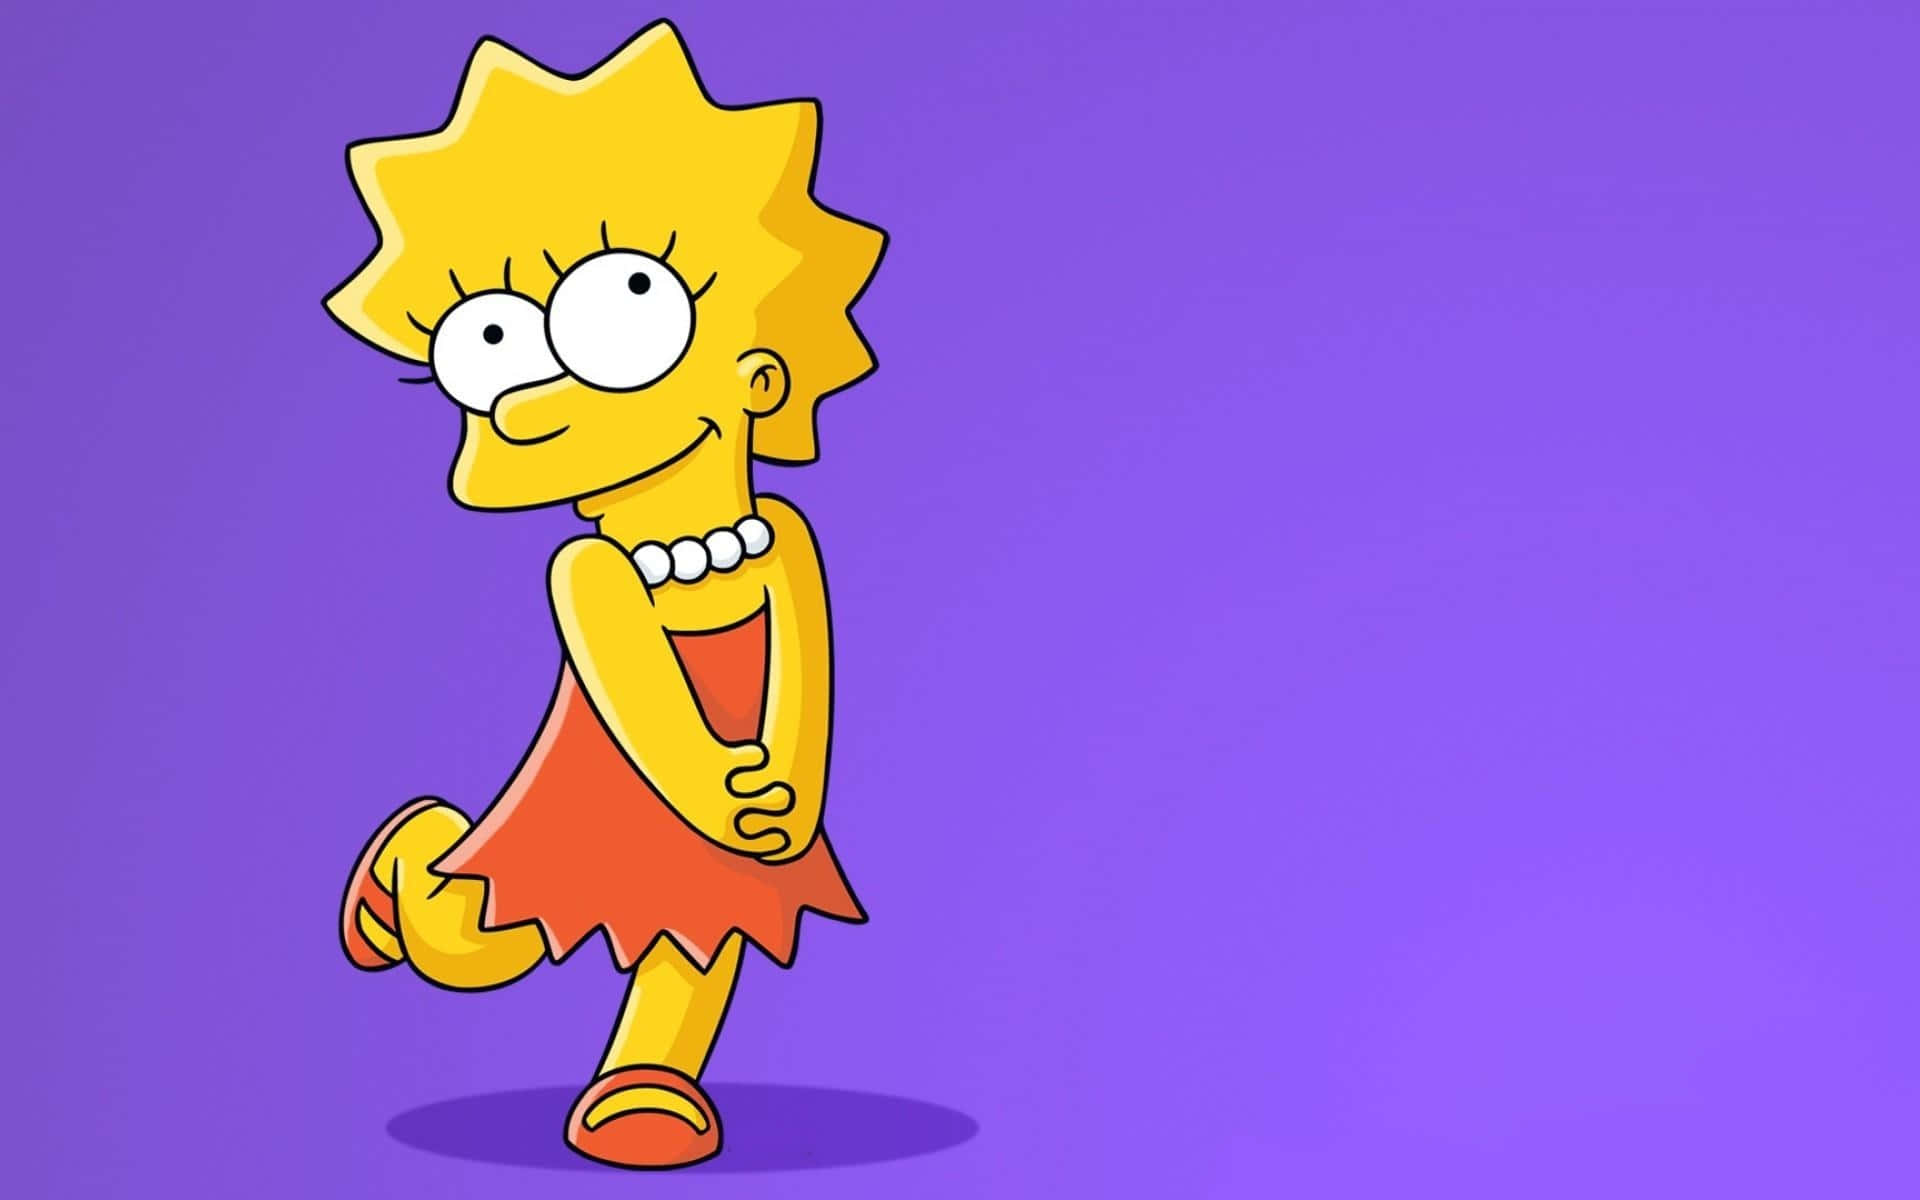 Fondosde Pantalla De Los Simpsons, Fondos De Pantalla De Los Simpsons, Fondos De Pantalla De Los Simpsons Fondo de pantalla